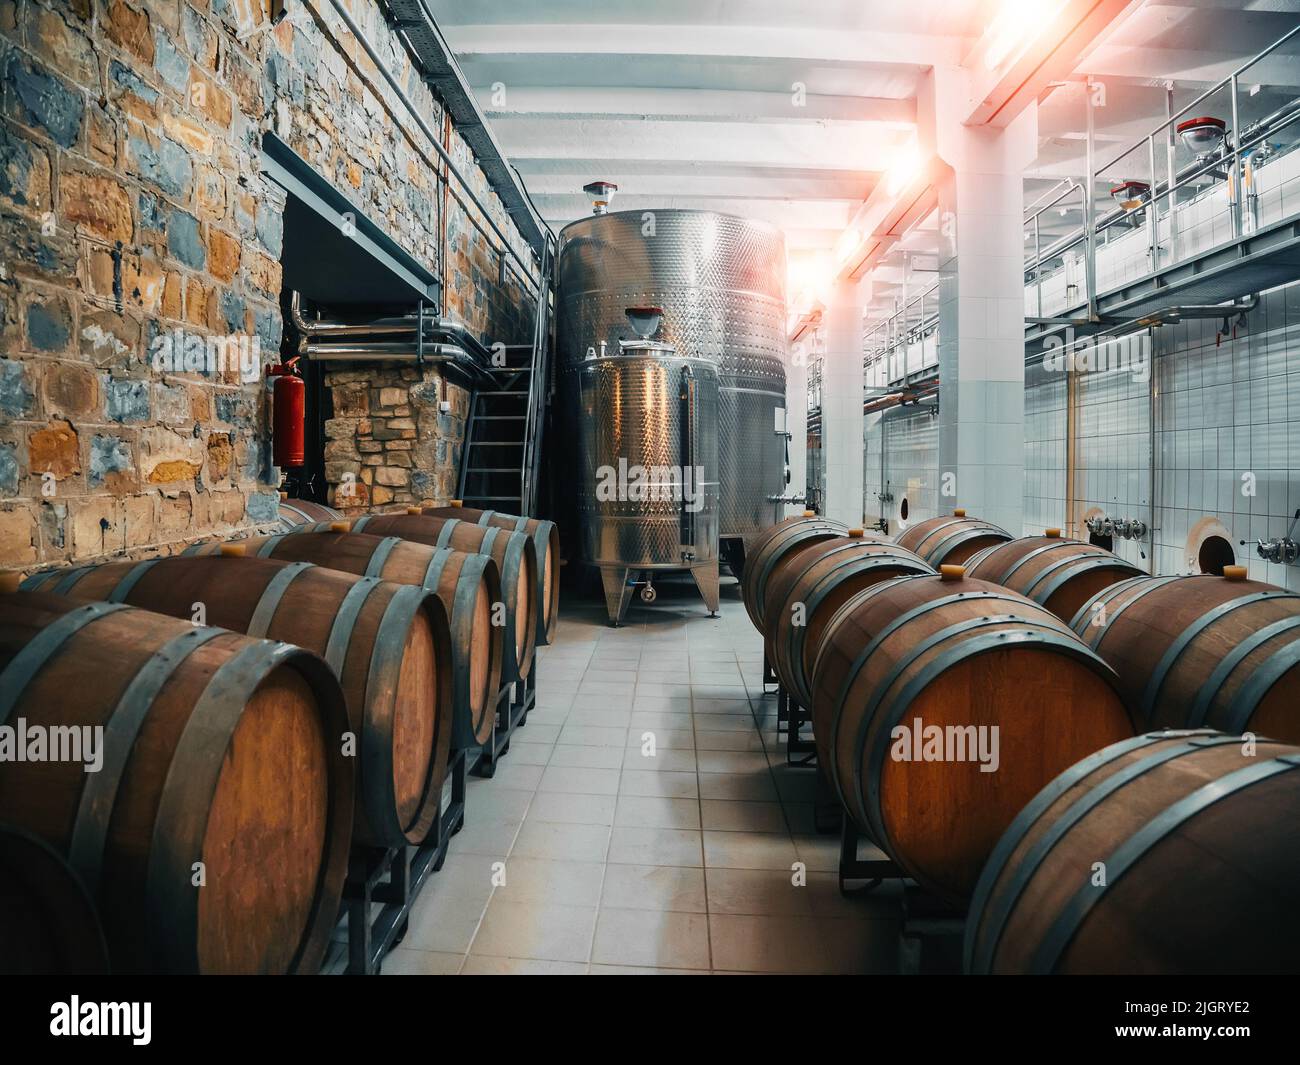 Azienda vinicola con vasche d'acciaio per la fermentazione e botti di legno per il processo di invecchiamento, concetto di vinificazione, industria alimentare. Foto Stock